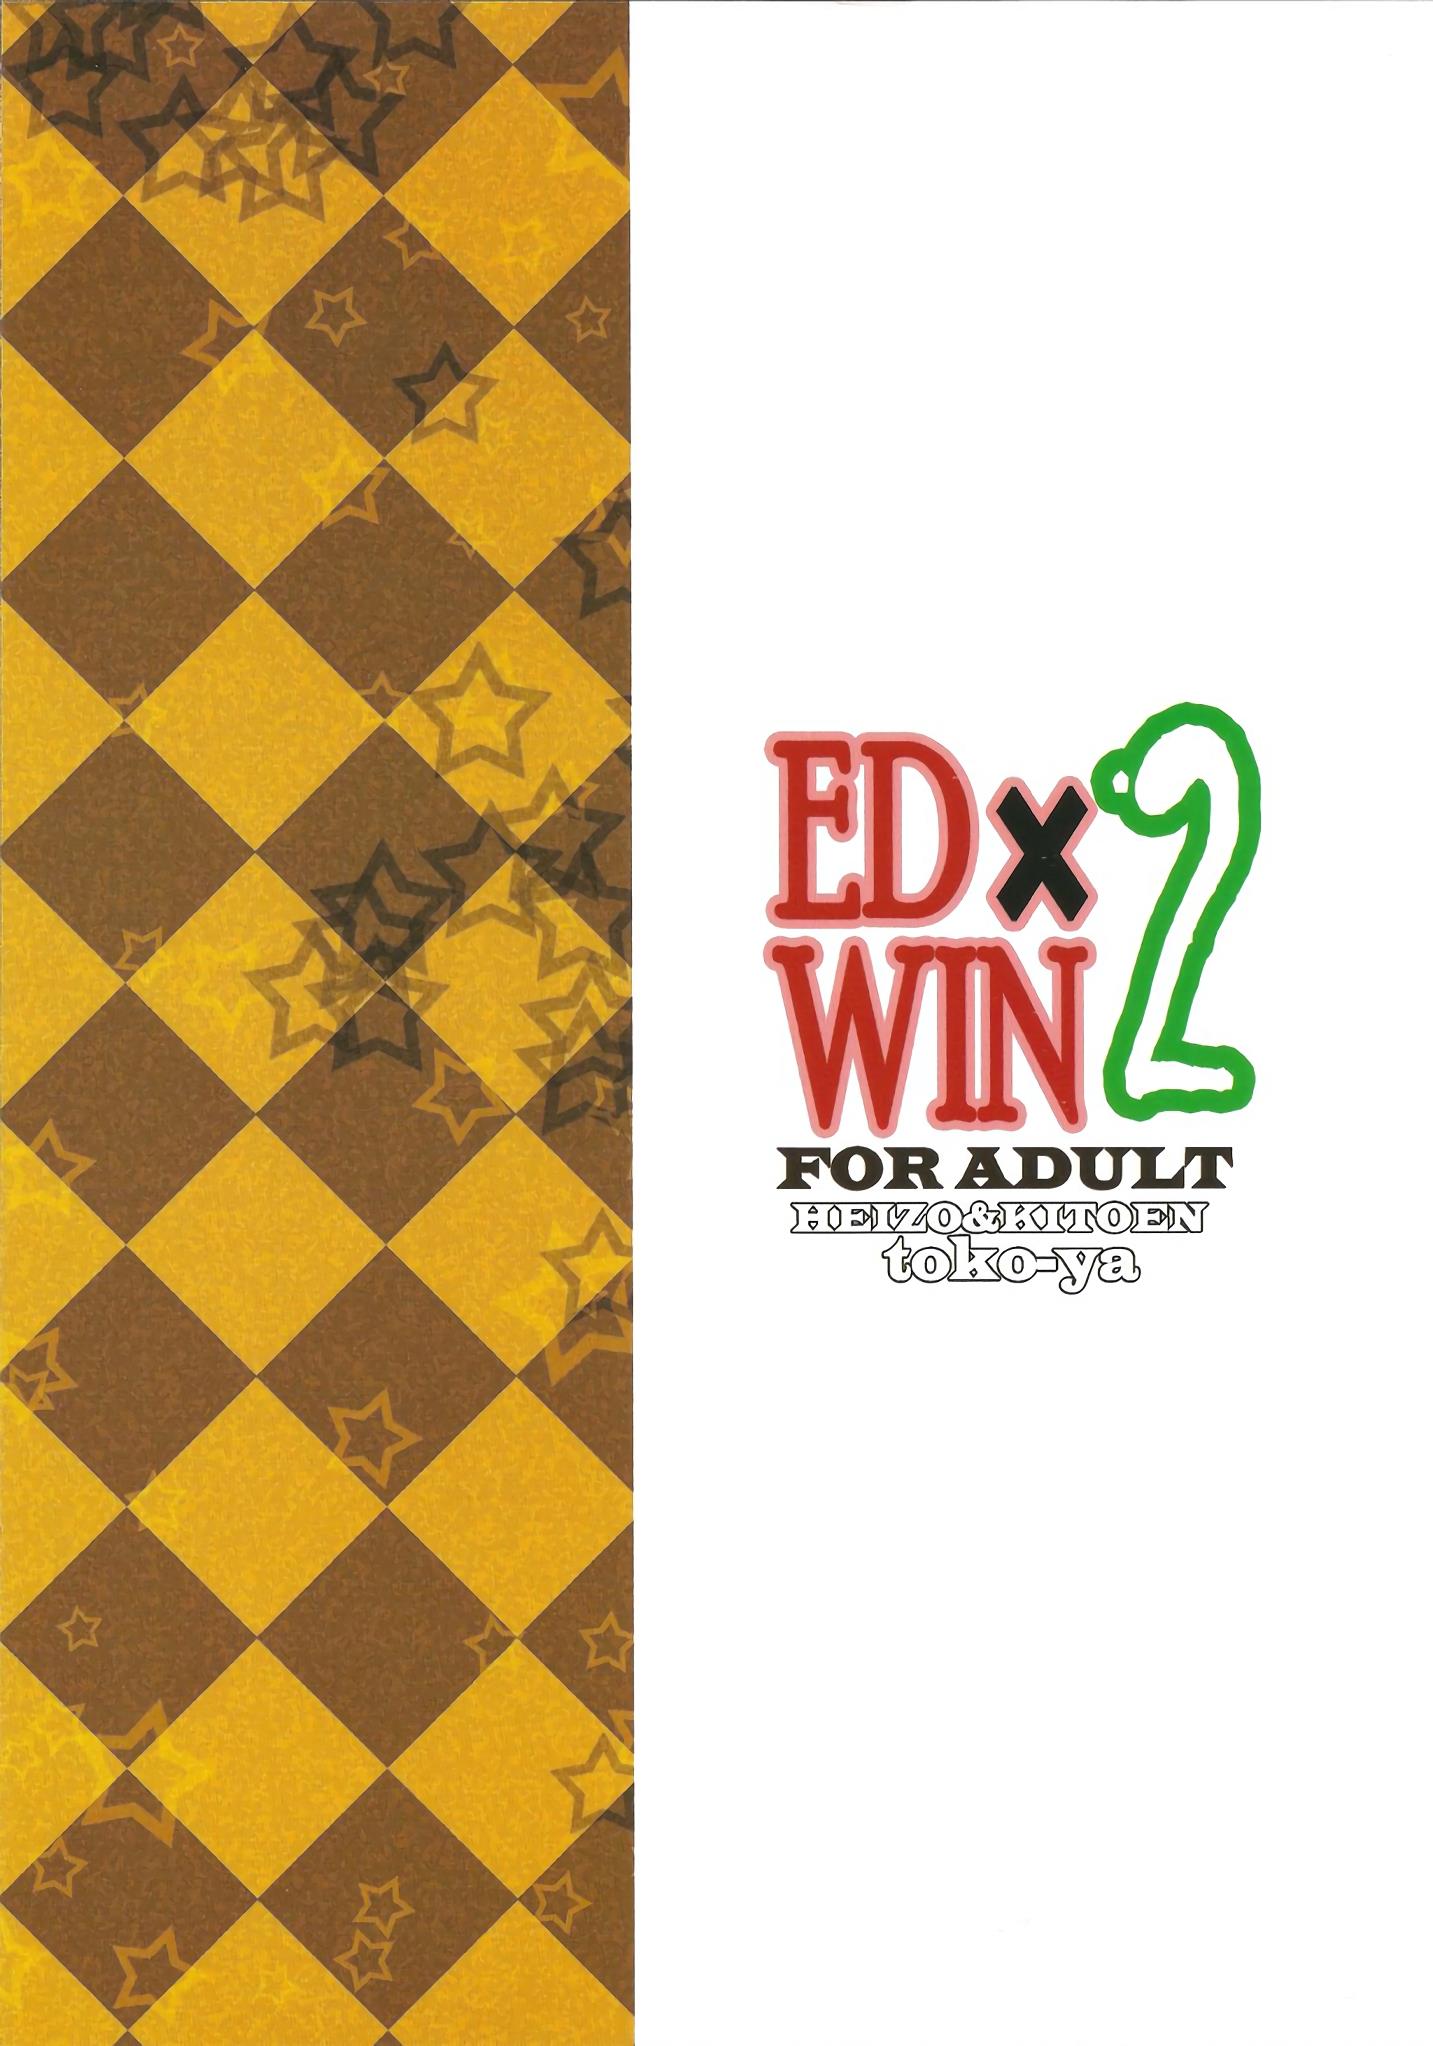 ED x WIN 2